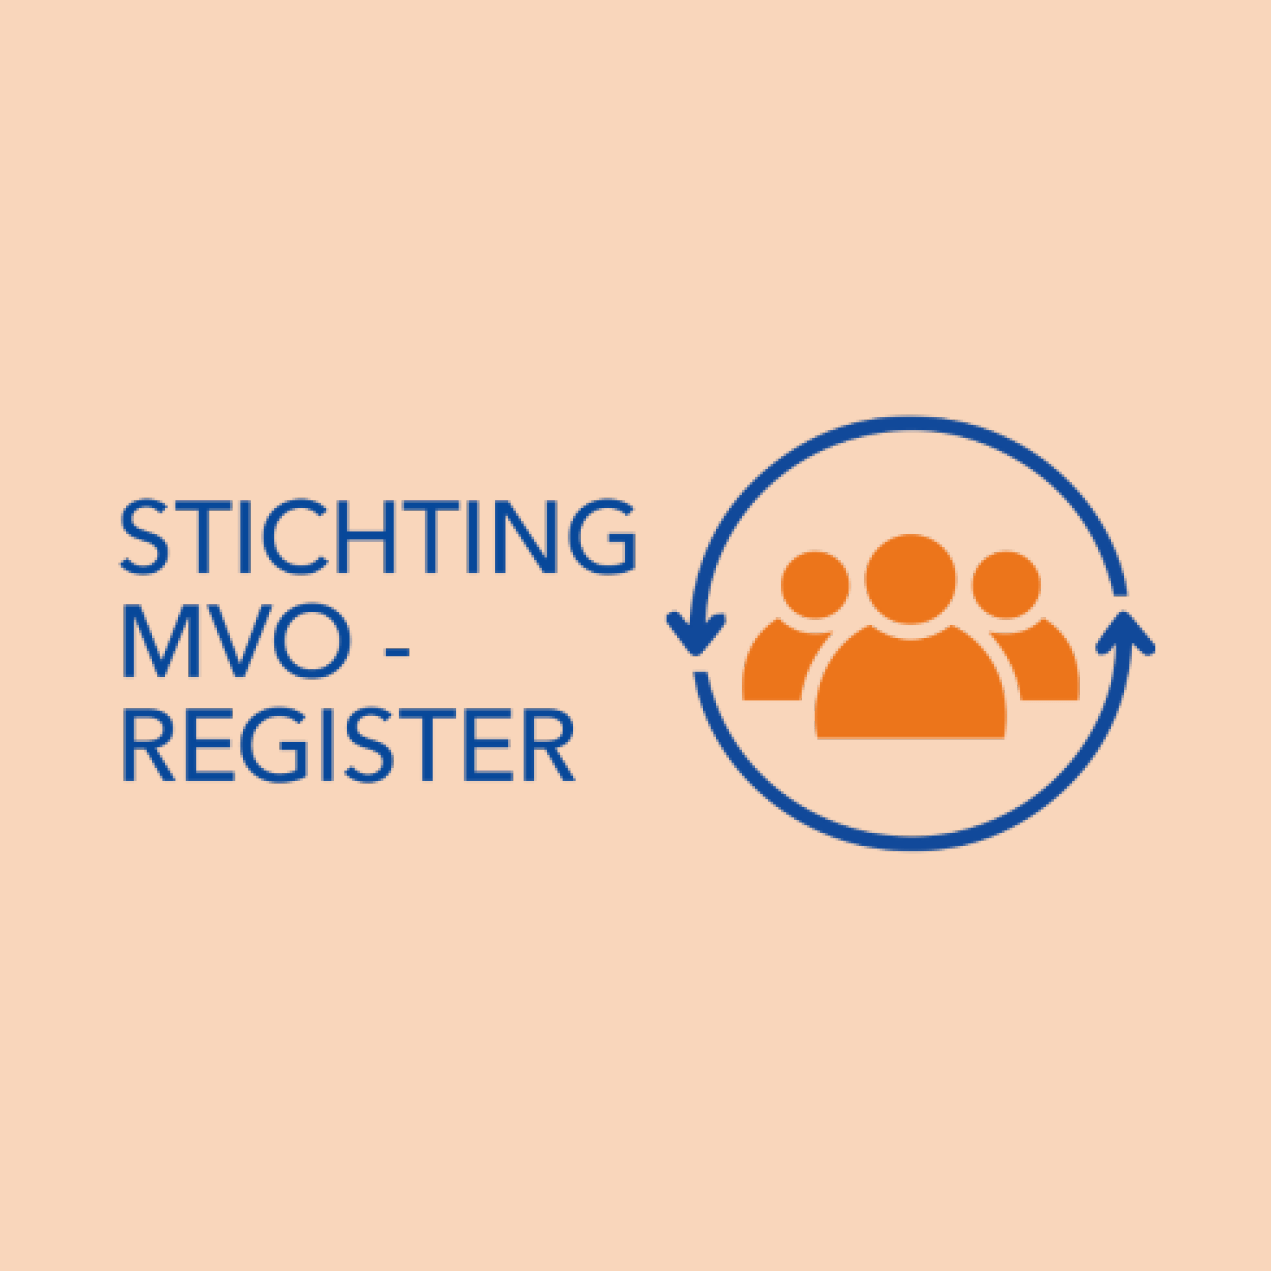 Socio de RSC de Onemeeting - Registro Stichting MVO